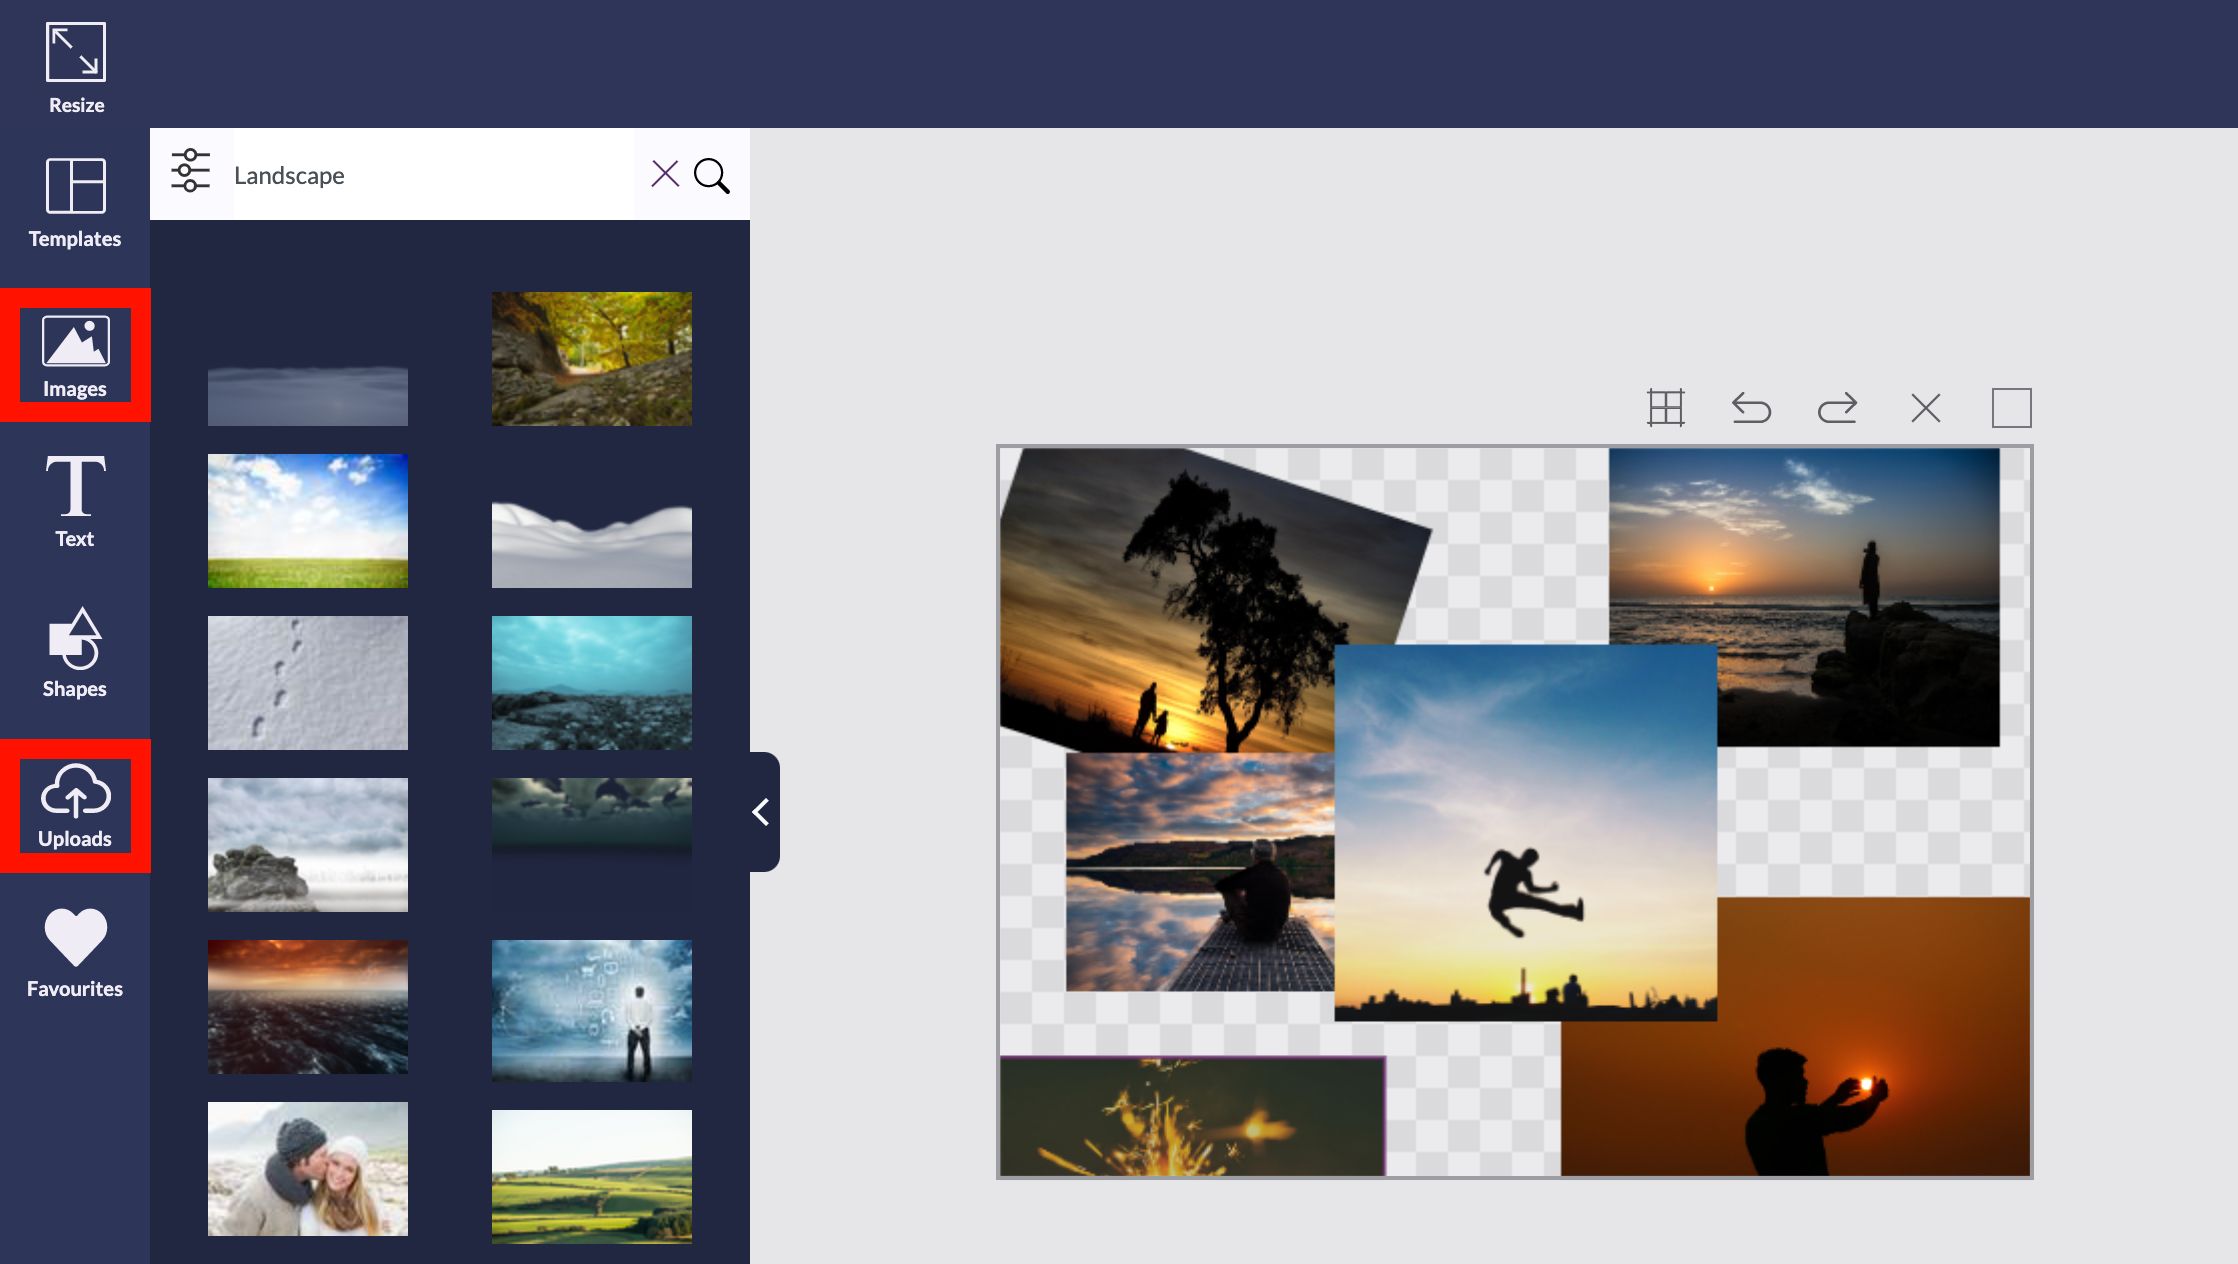 Captura de tela do processo de edição com as opções de imagens e upload destacadas